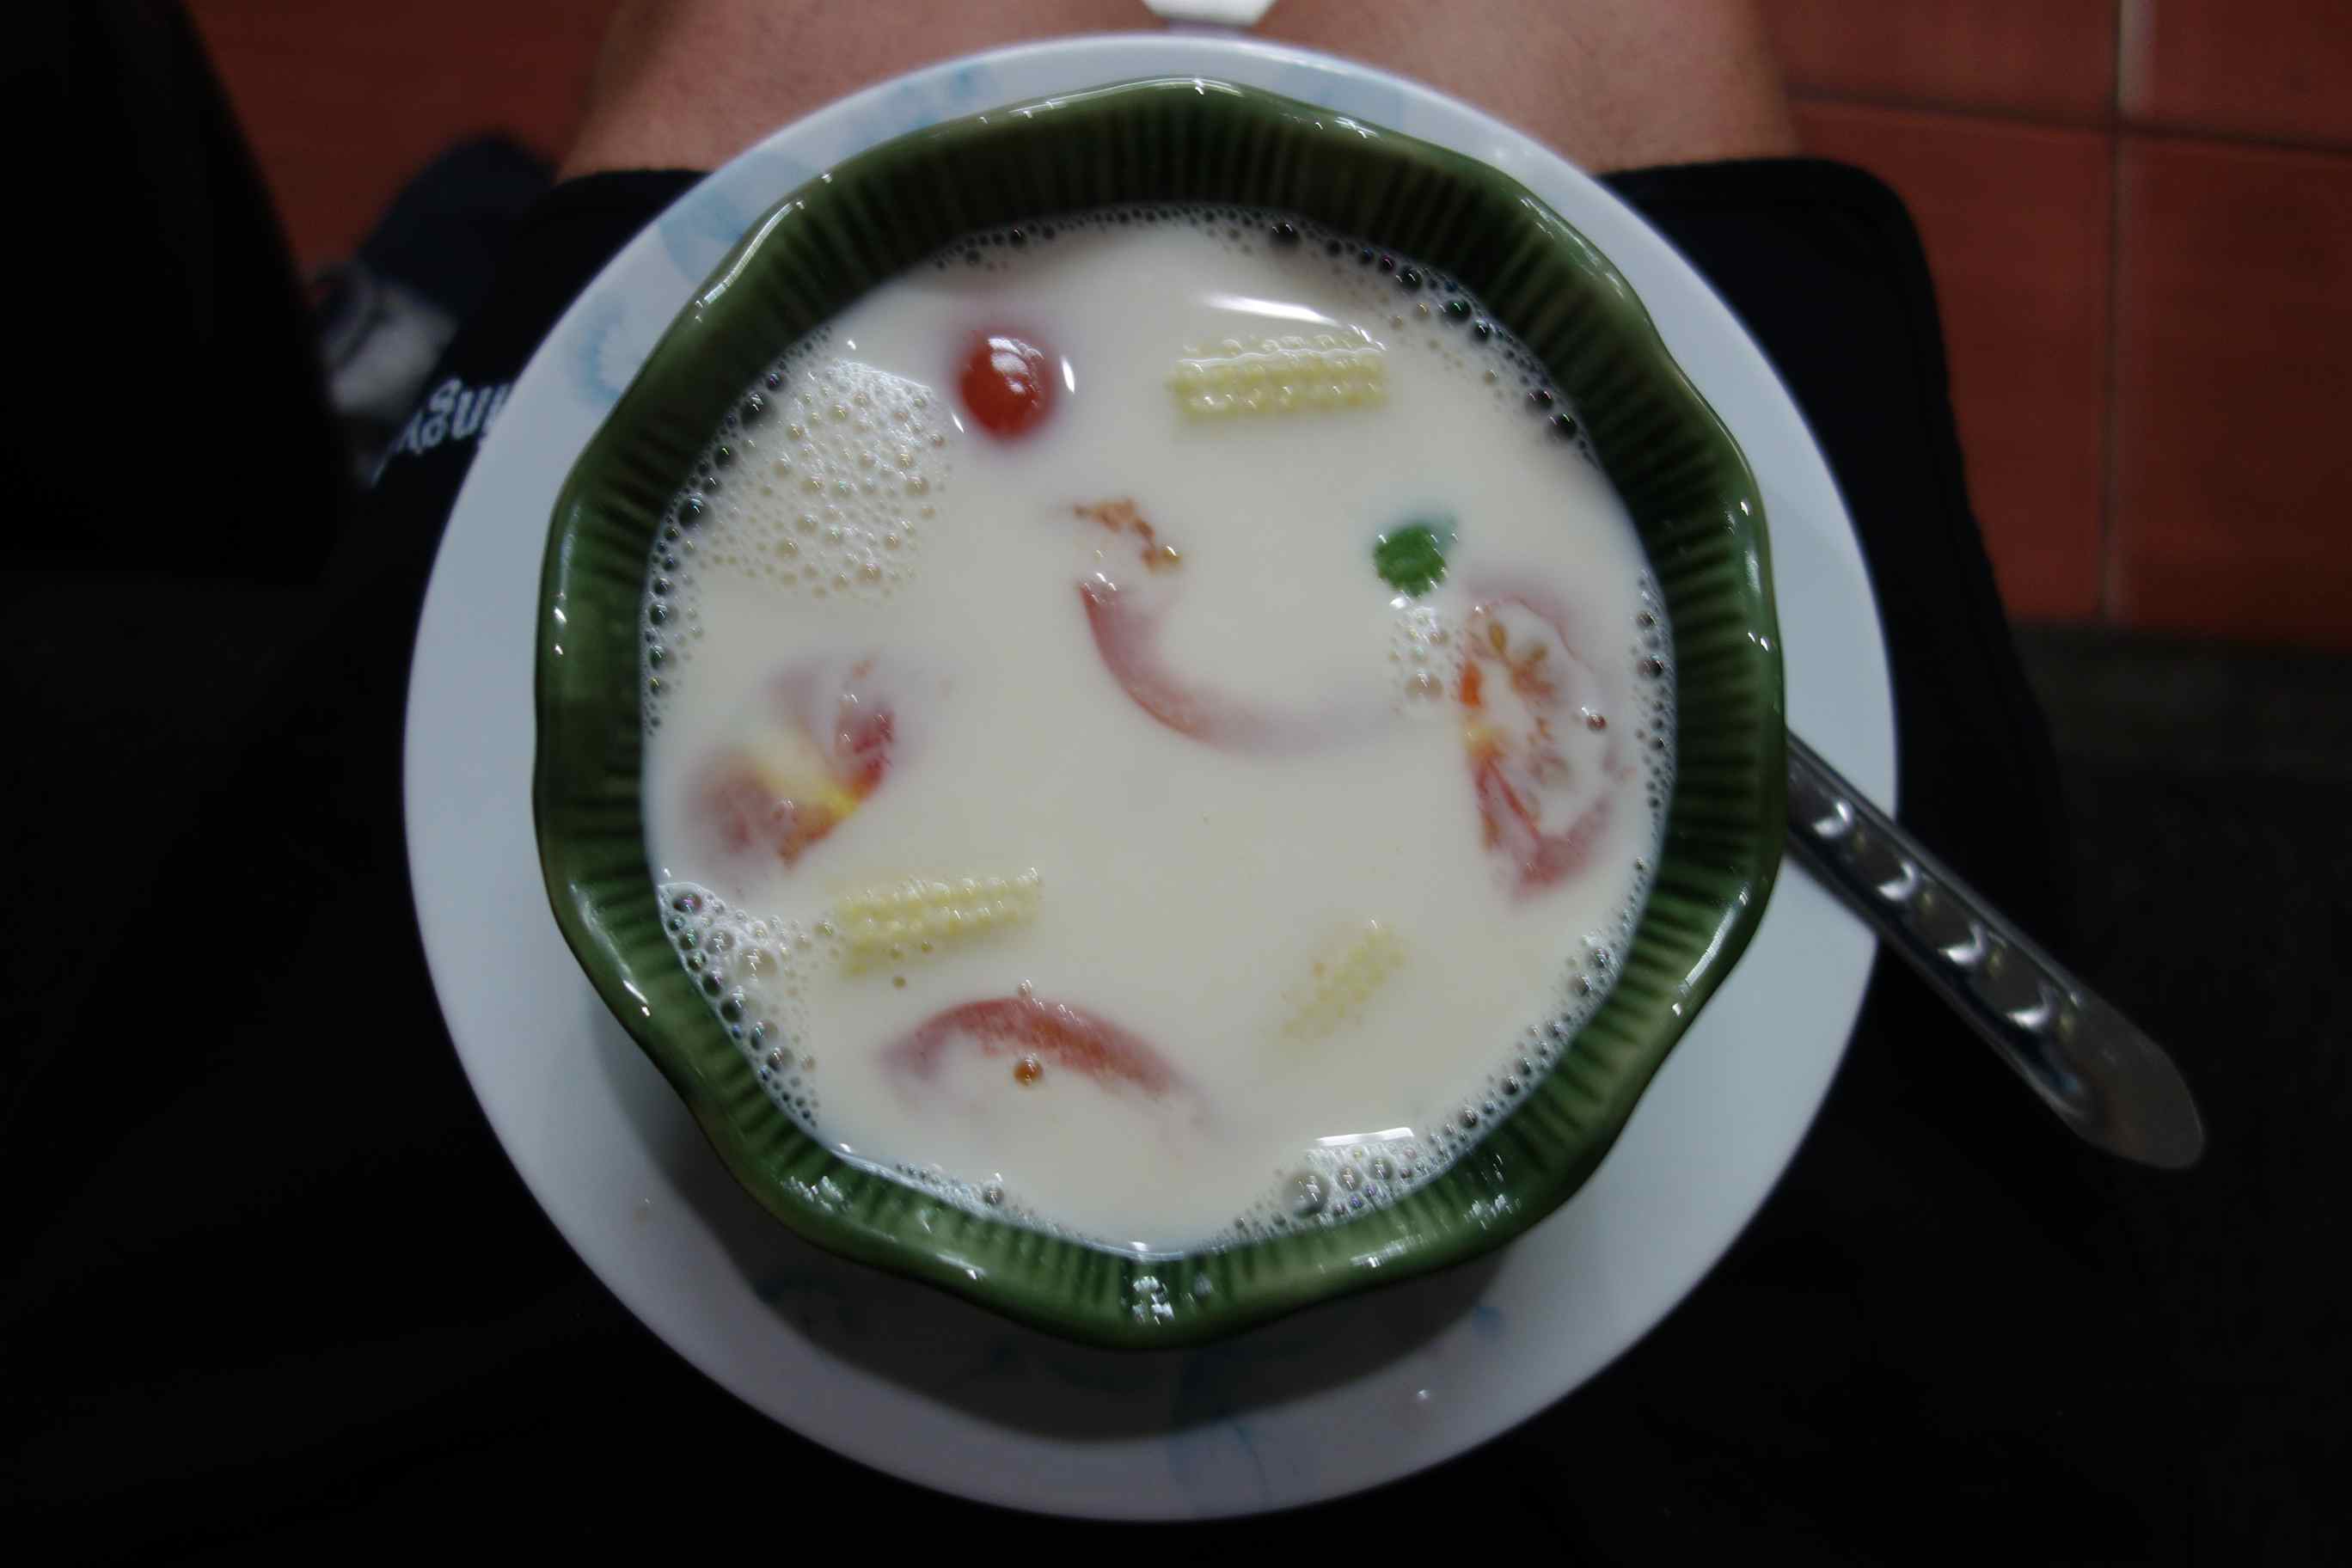 Coconut soup